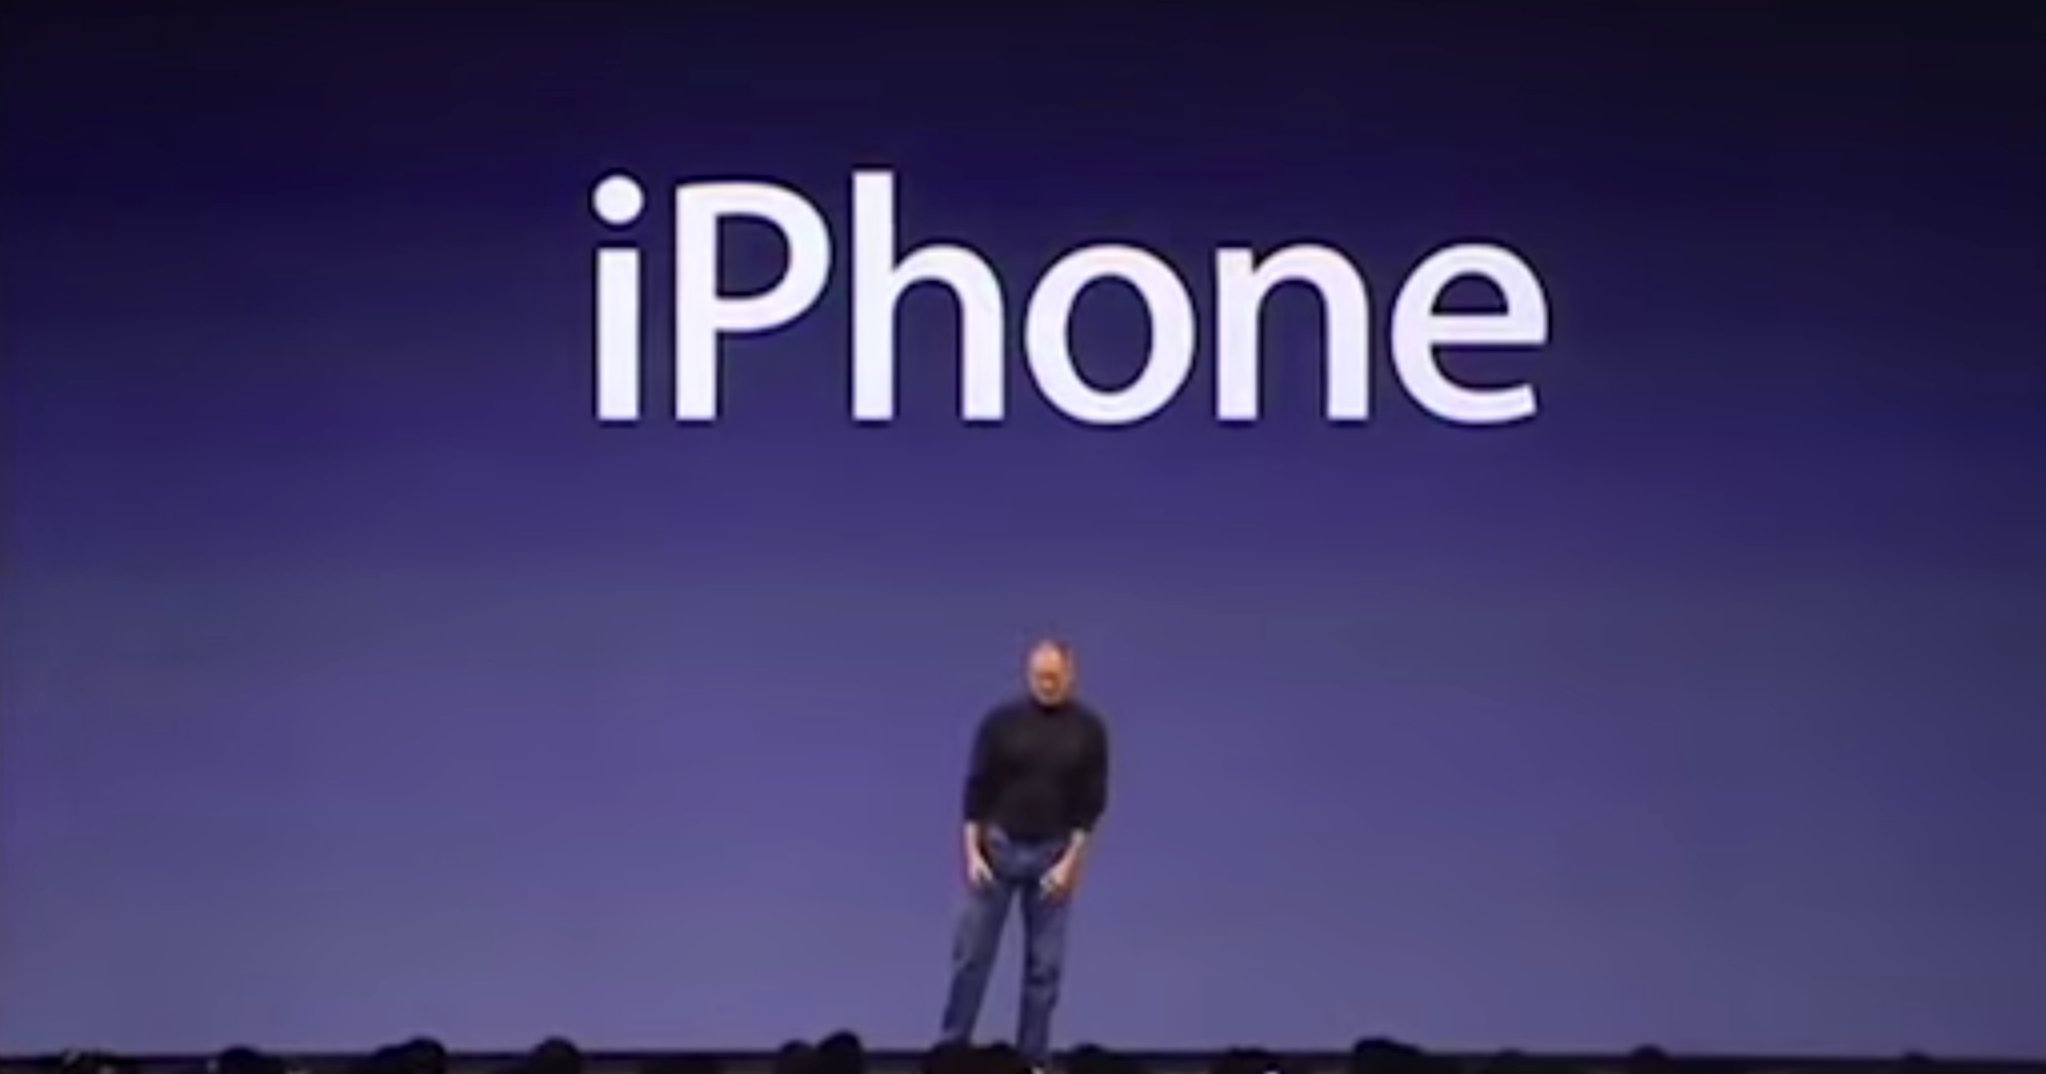 7 Jahre iPhone Geschichte: iPhone OS 1.0 bis iOS 8 im Video 1